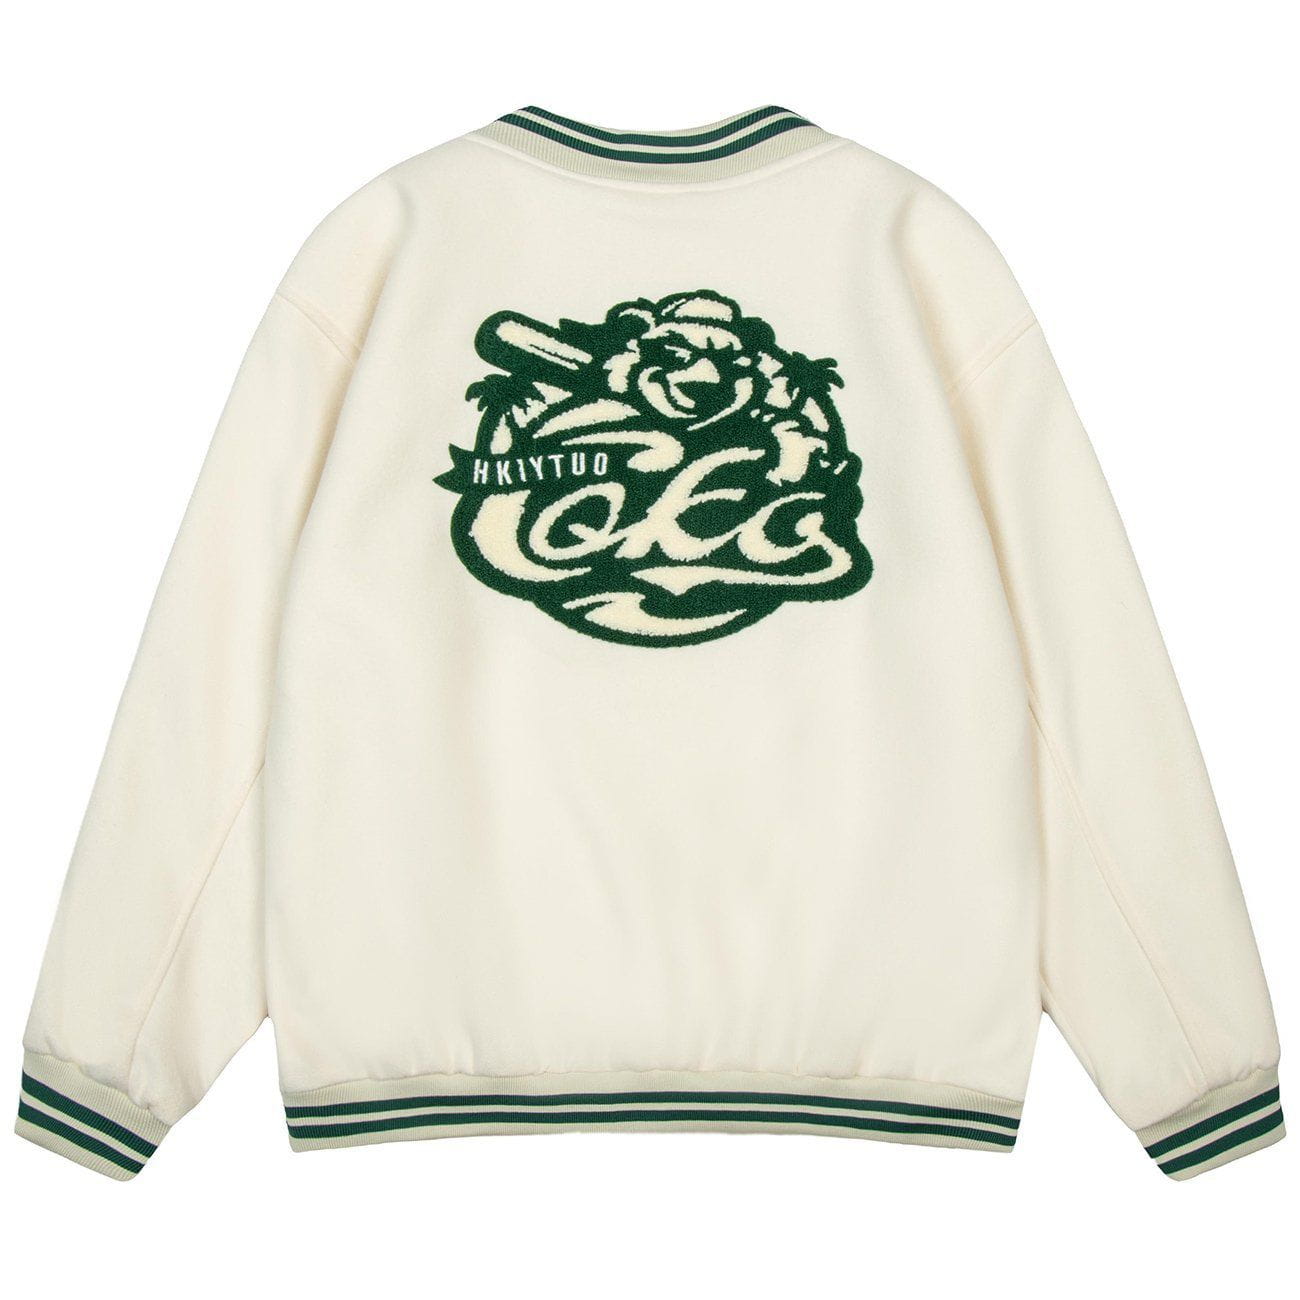 Eprezzy® - Towel Embroidery Winter Coats Streetwear Fashion - eprezzy.com